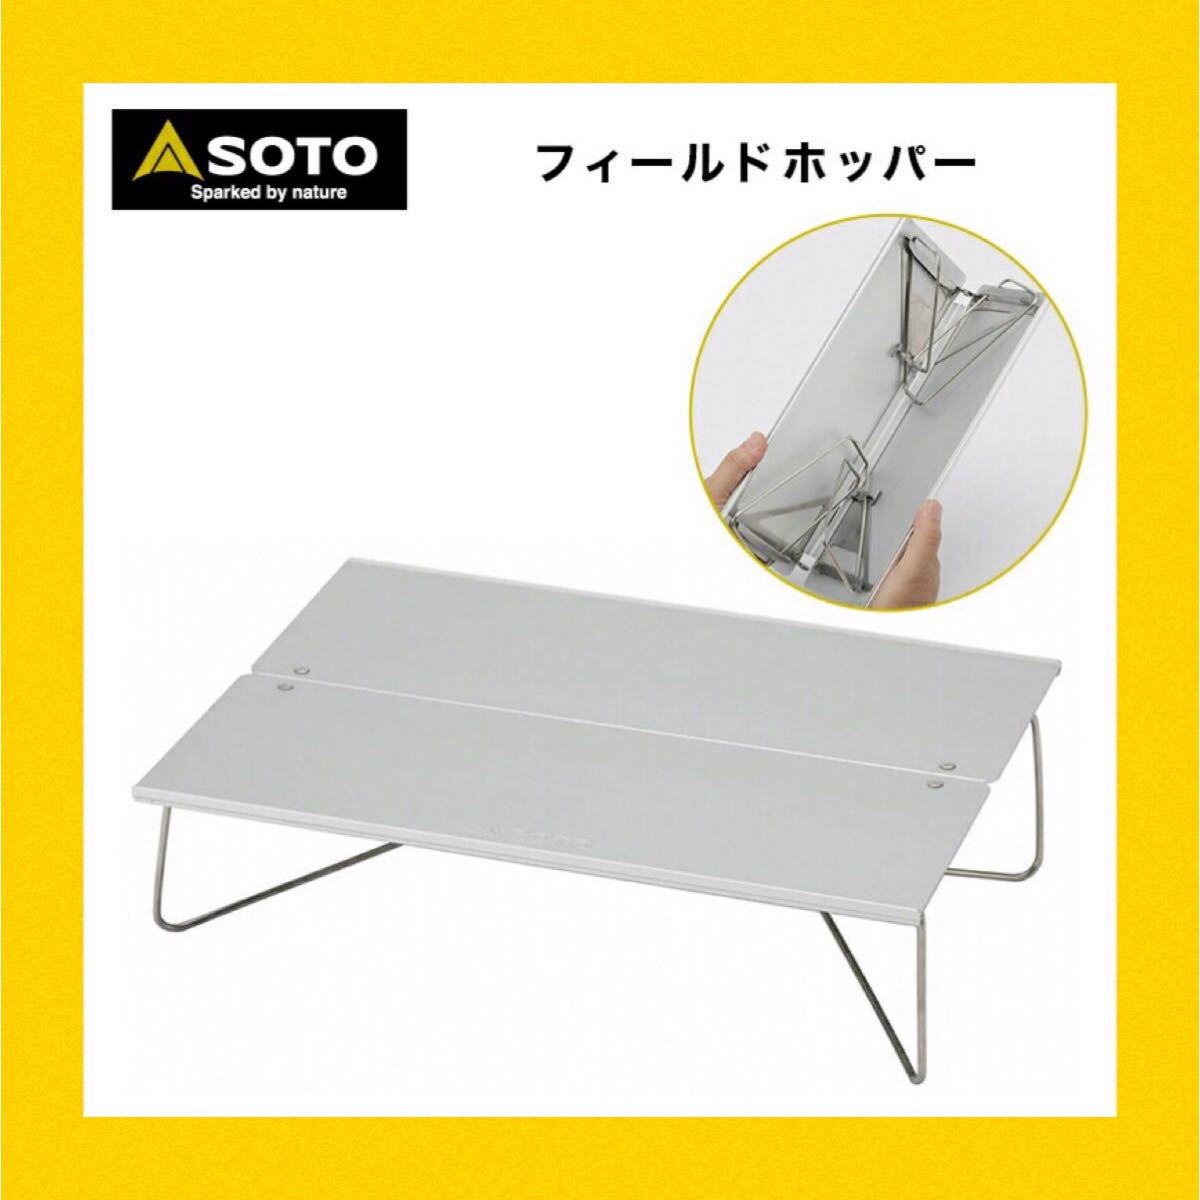 SOTO ソト　フィールドホッパー テーブル (ST-630)  新品　キャンプ